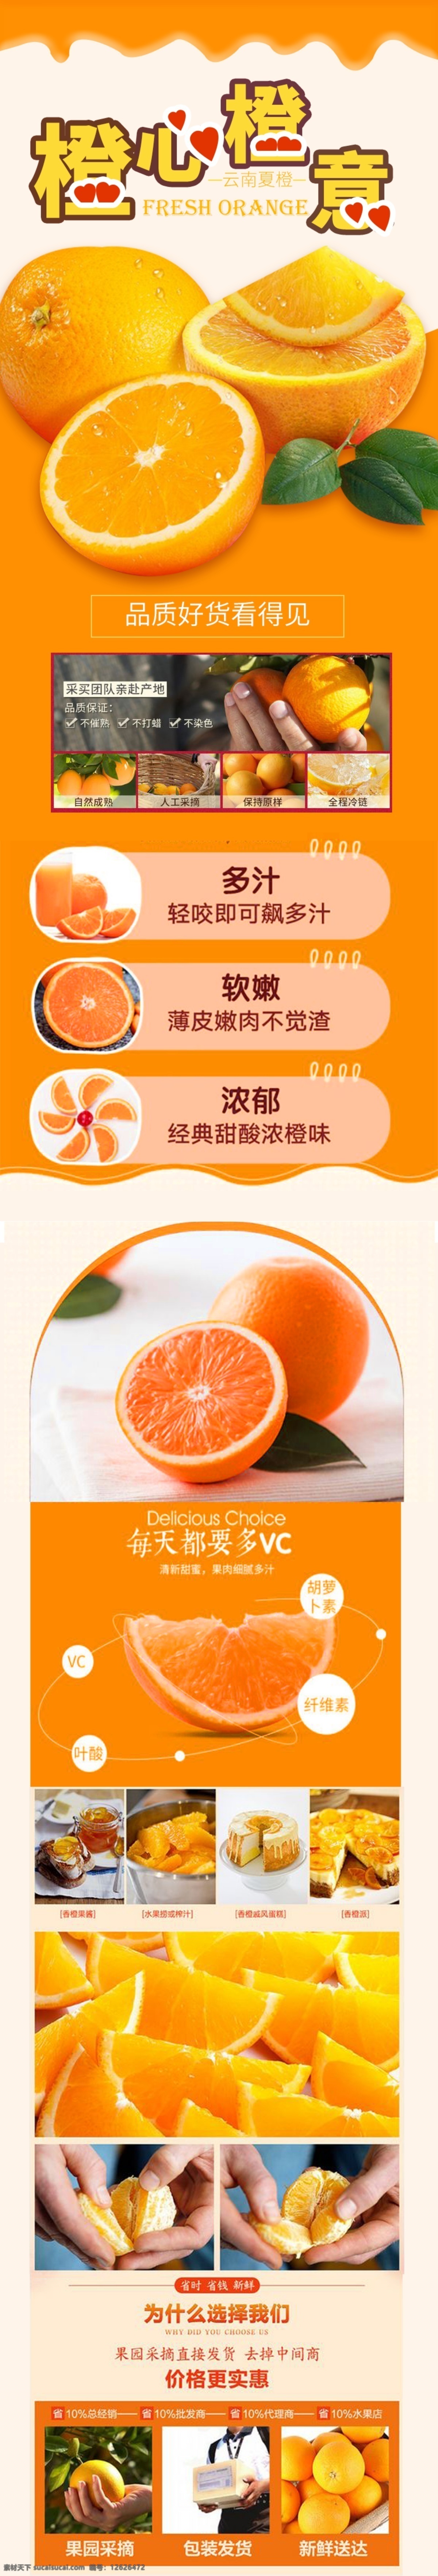 99 橙子 水果 生鲜 详情 页 模板 详情页 99大促 水果生鲜